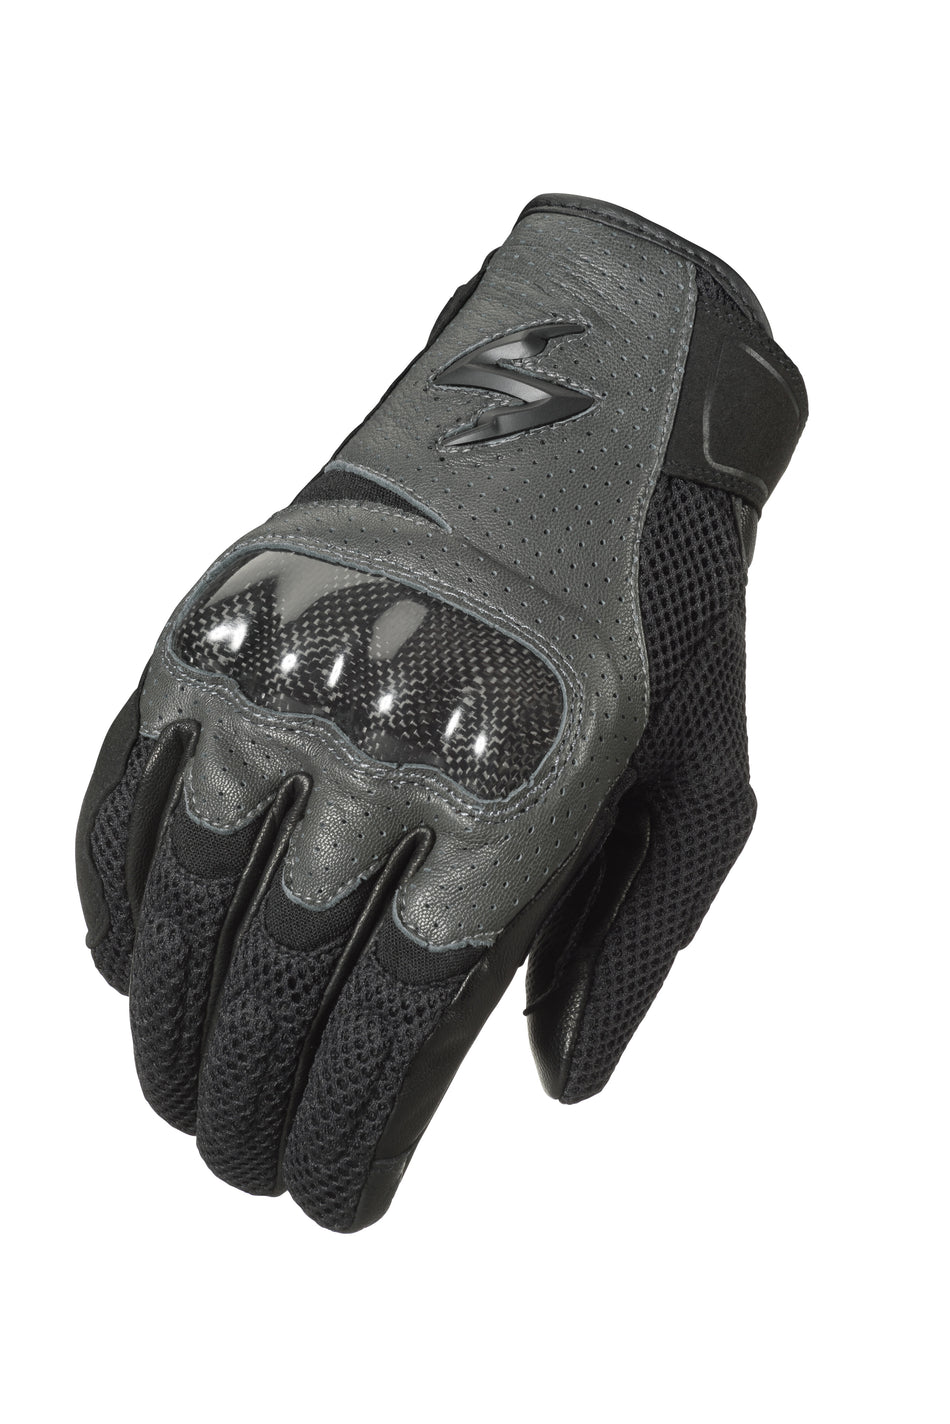 SCORPION EXO Vortex Air Gloves Grey 3x G36-068